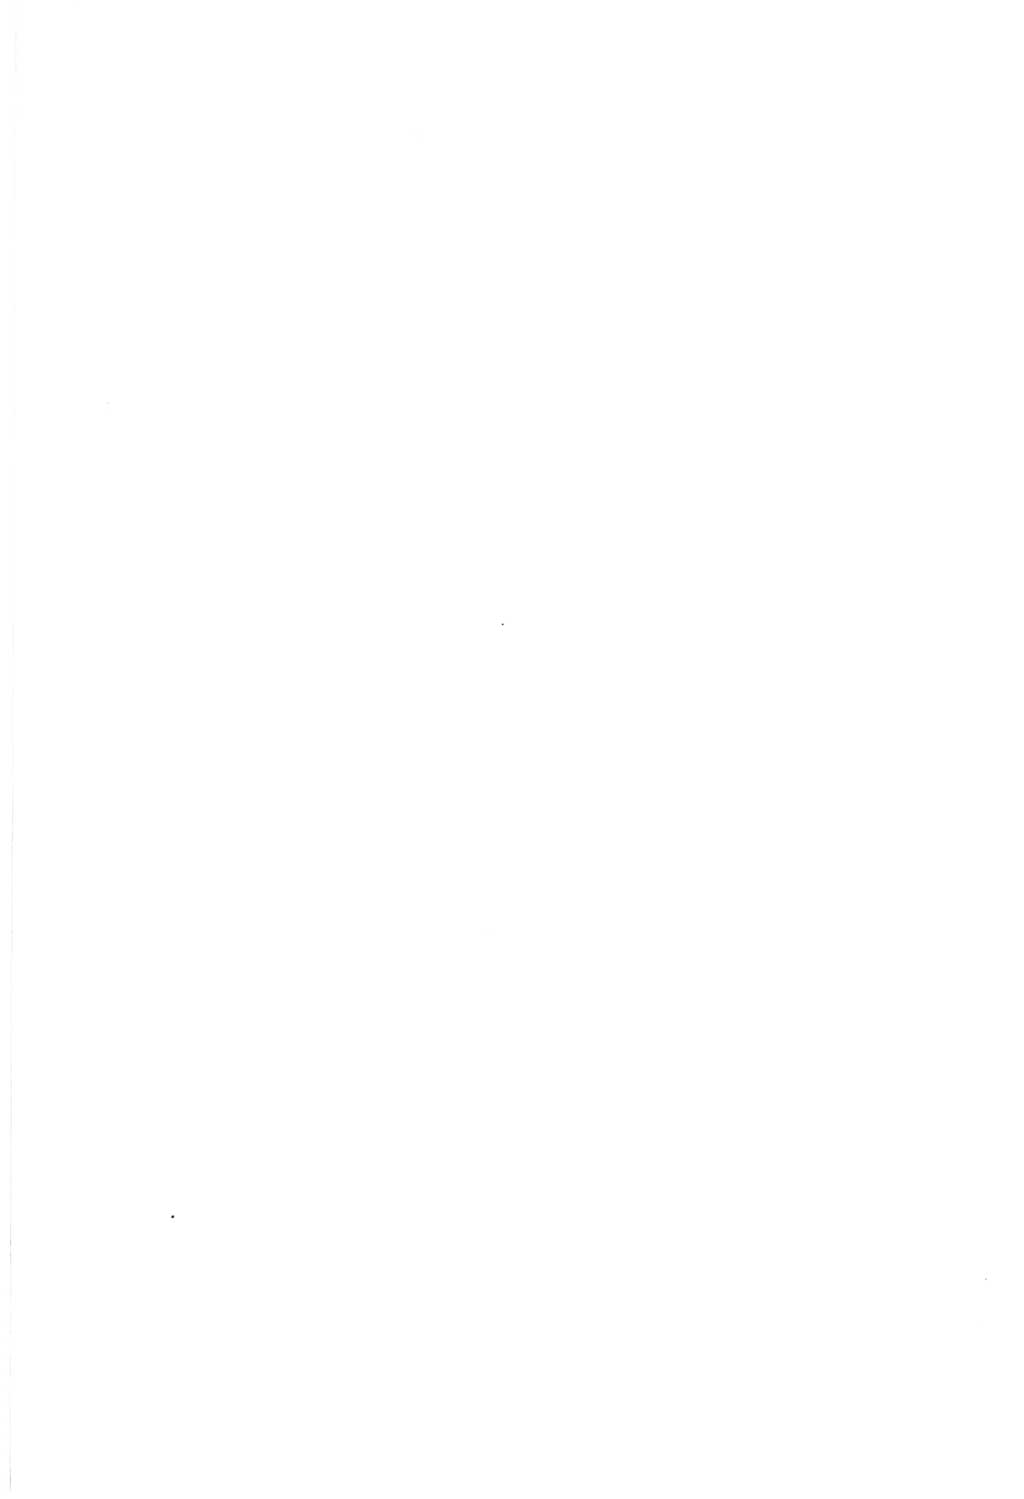 Protokoll der Verhandlungen des Ⅷ. Parteitages der Sozialistischen Einheitspartei Deutschlands (SED) [Deutsche Demokratische Republik (DDR)] 1971, Band 1, Seite 2 (Prot. Verh. Ⅷ. PT SED DDR 1971, Bd. 1, S. 2)